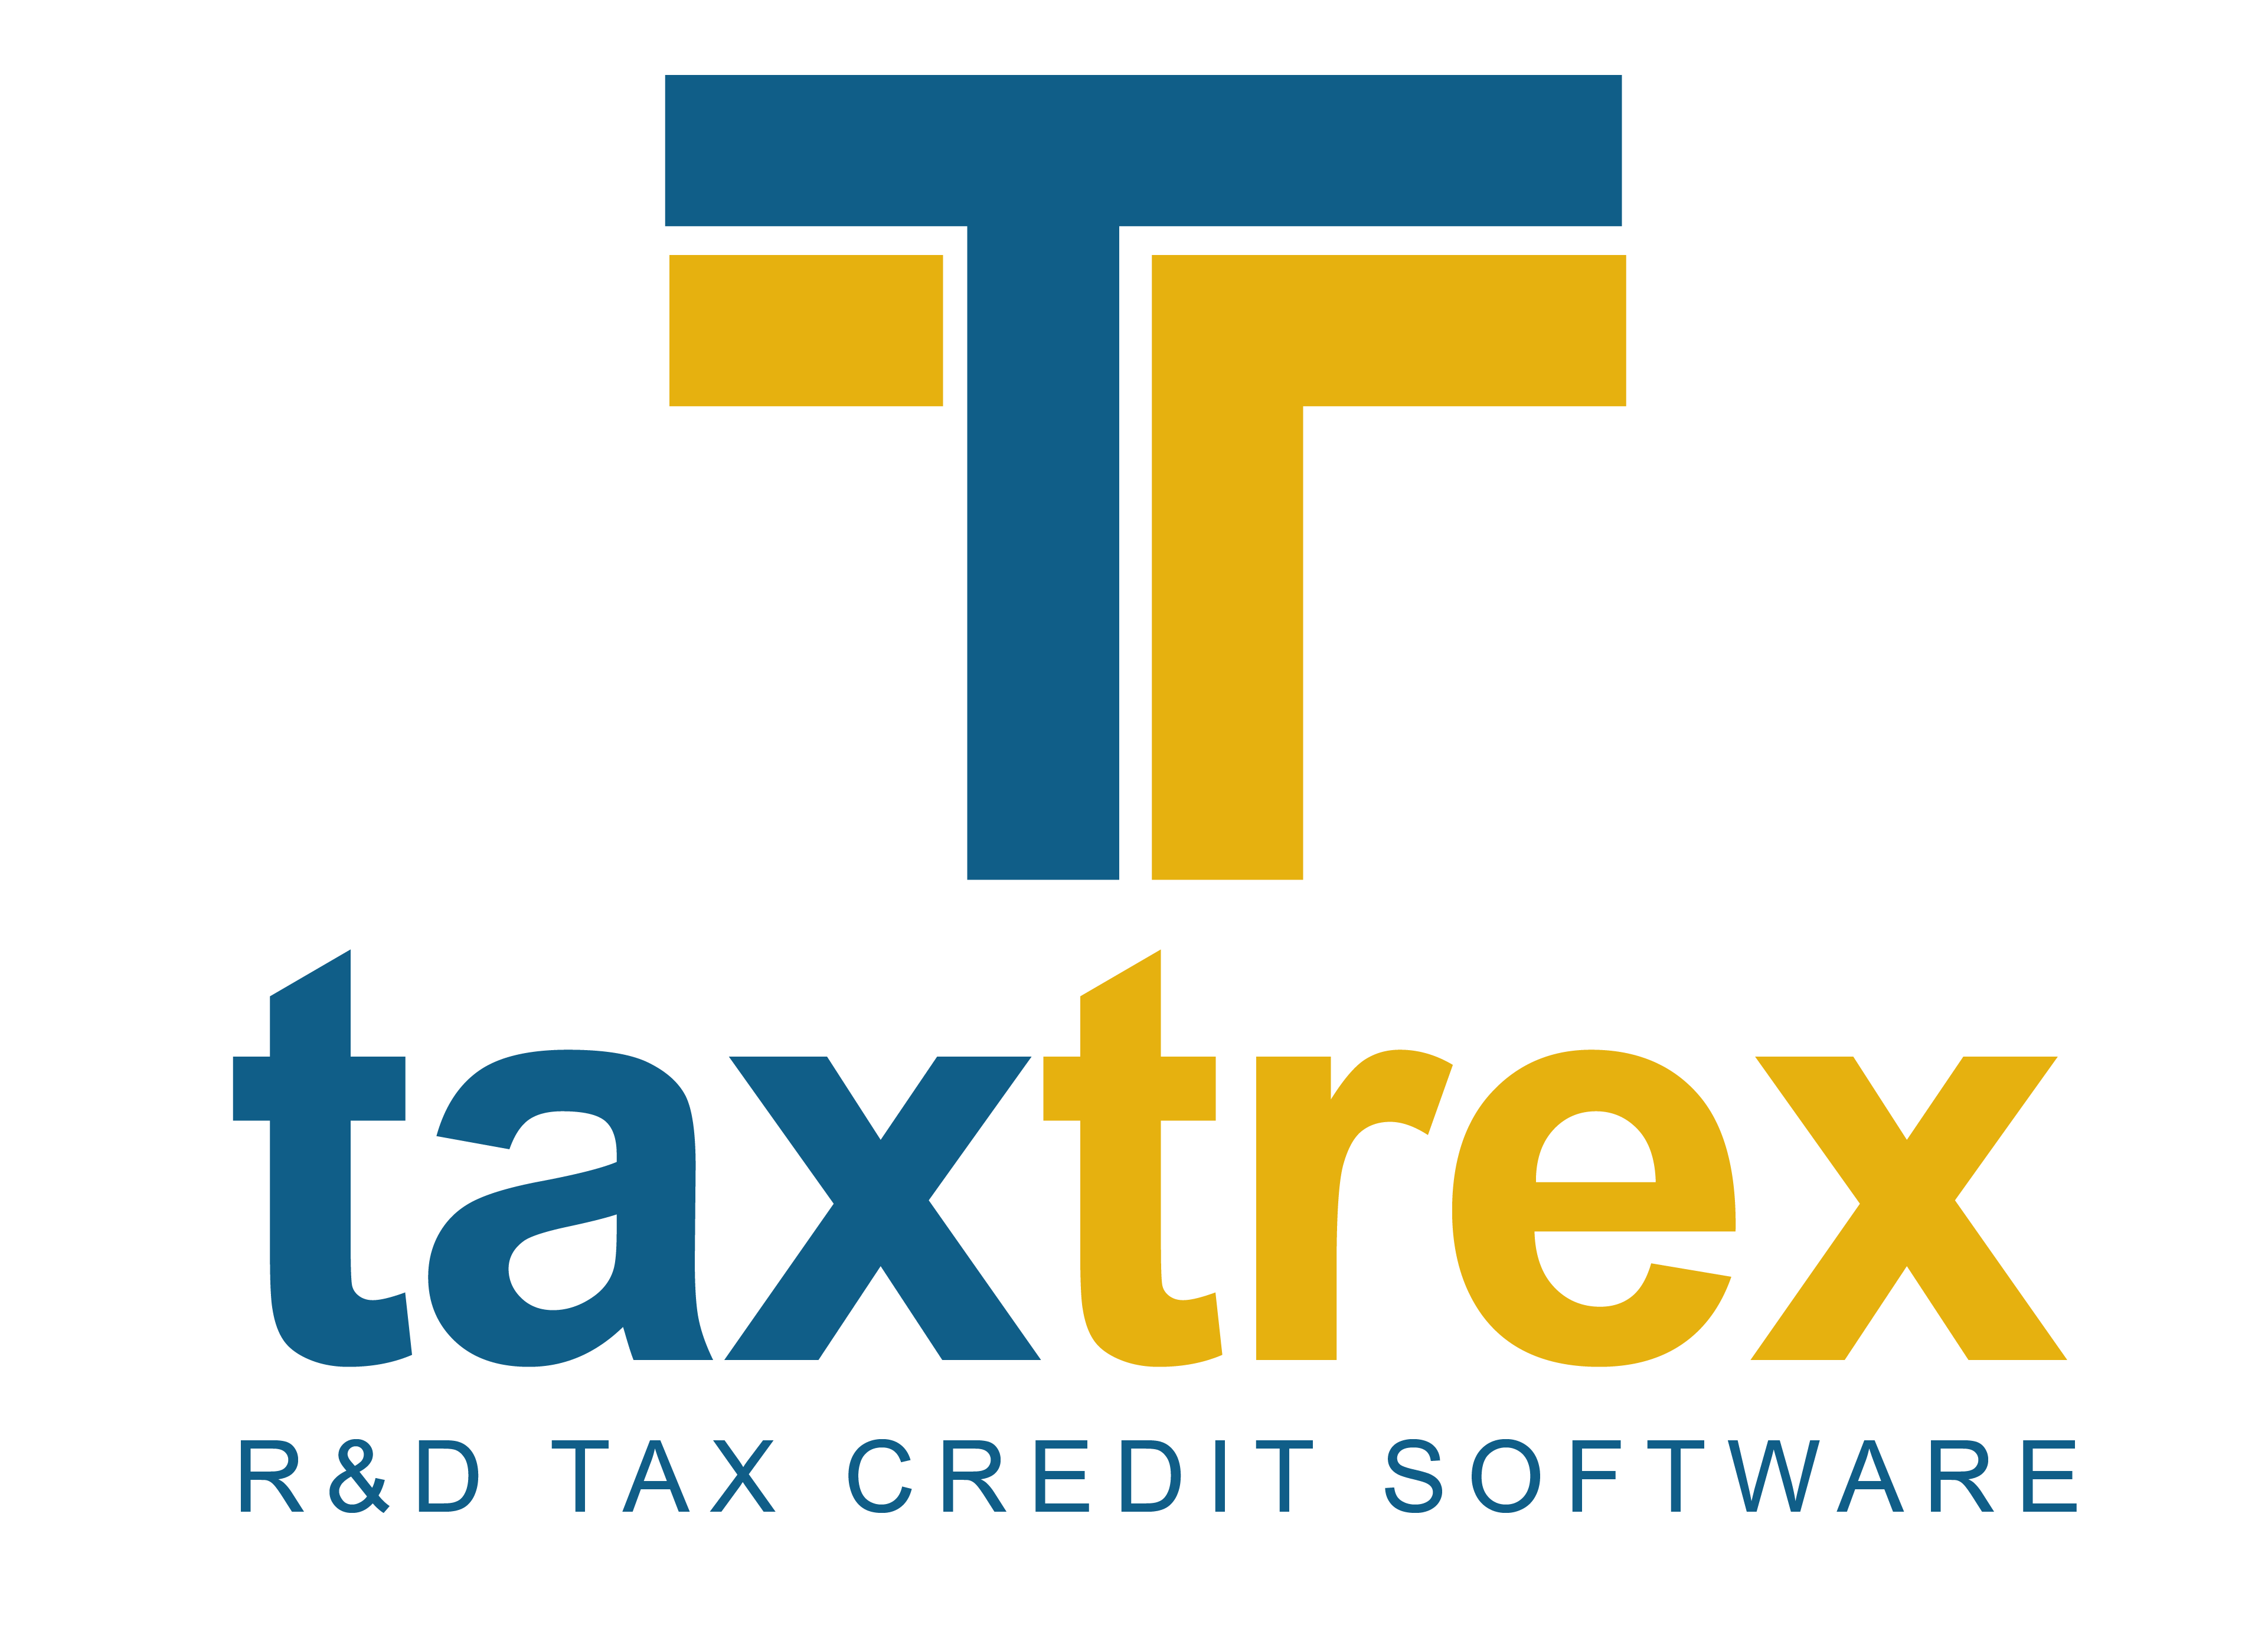 TaxTrex